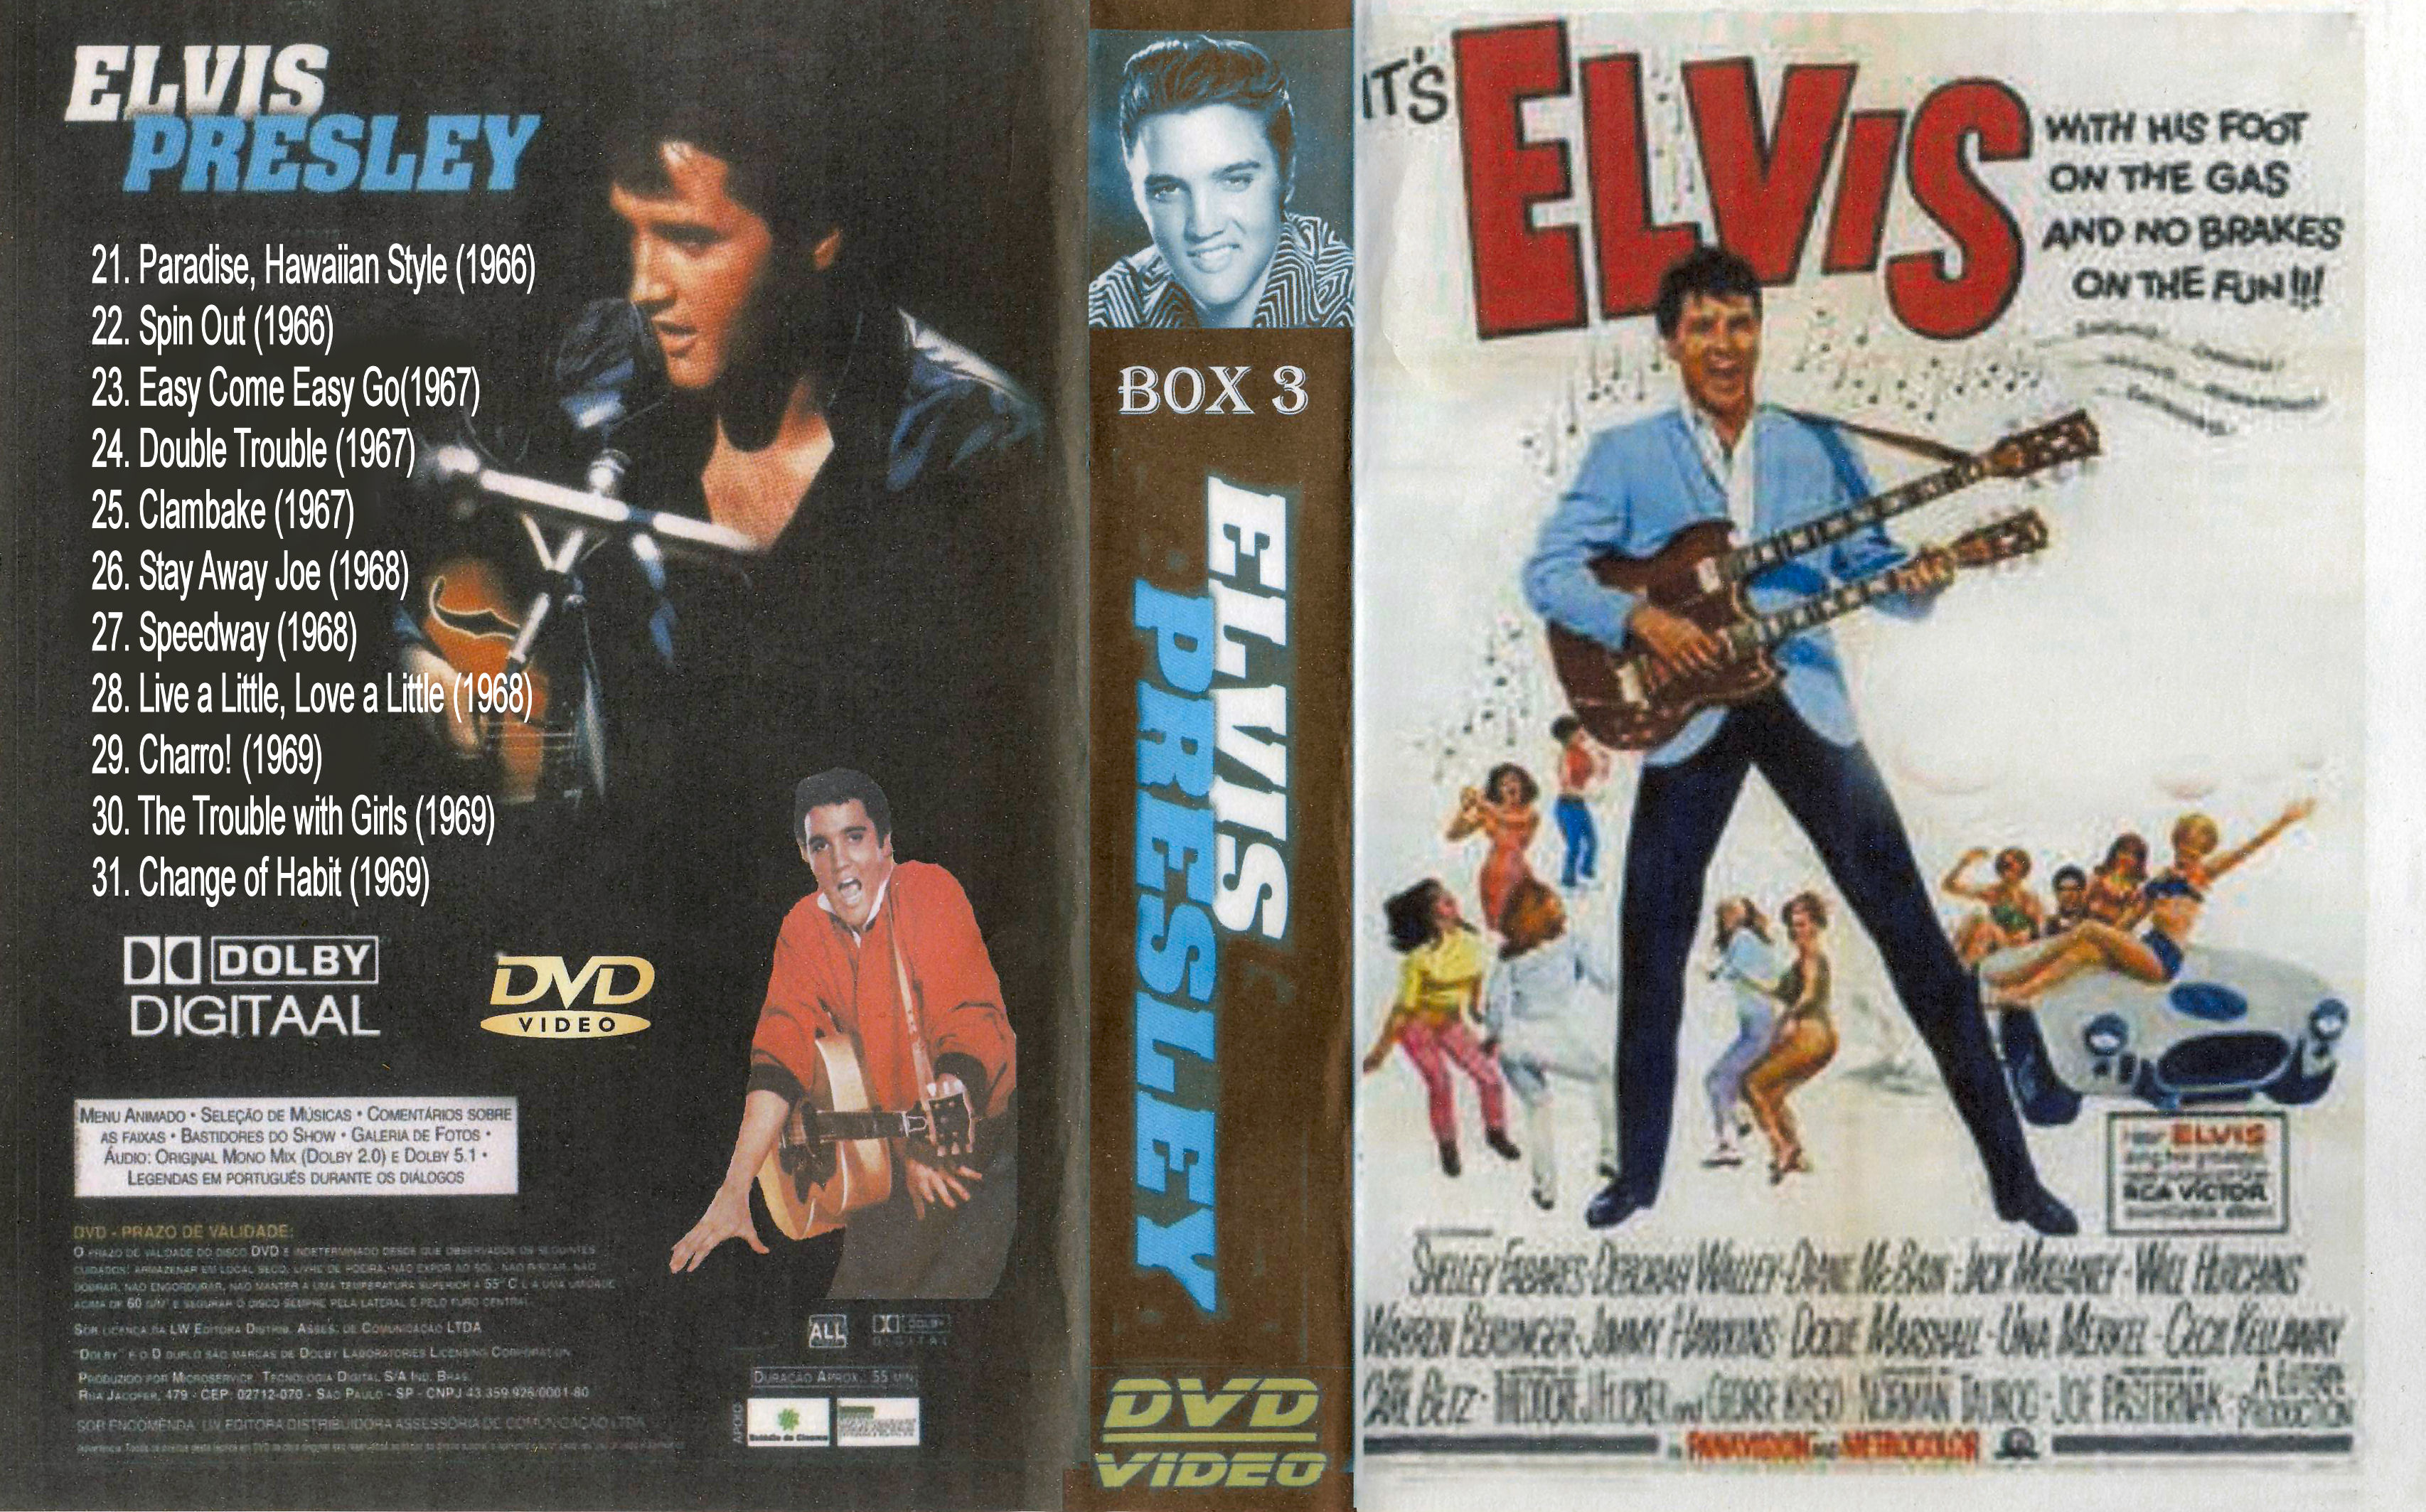 Elvis Presley ( 25. Clambake (1967) DvD 25 van 31